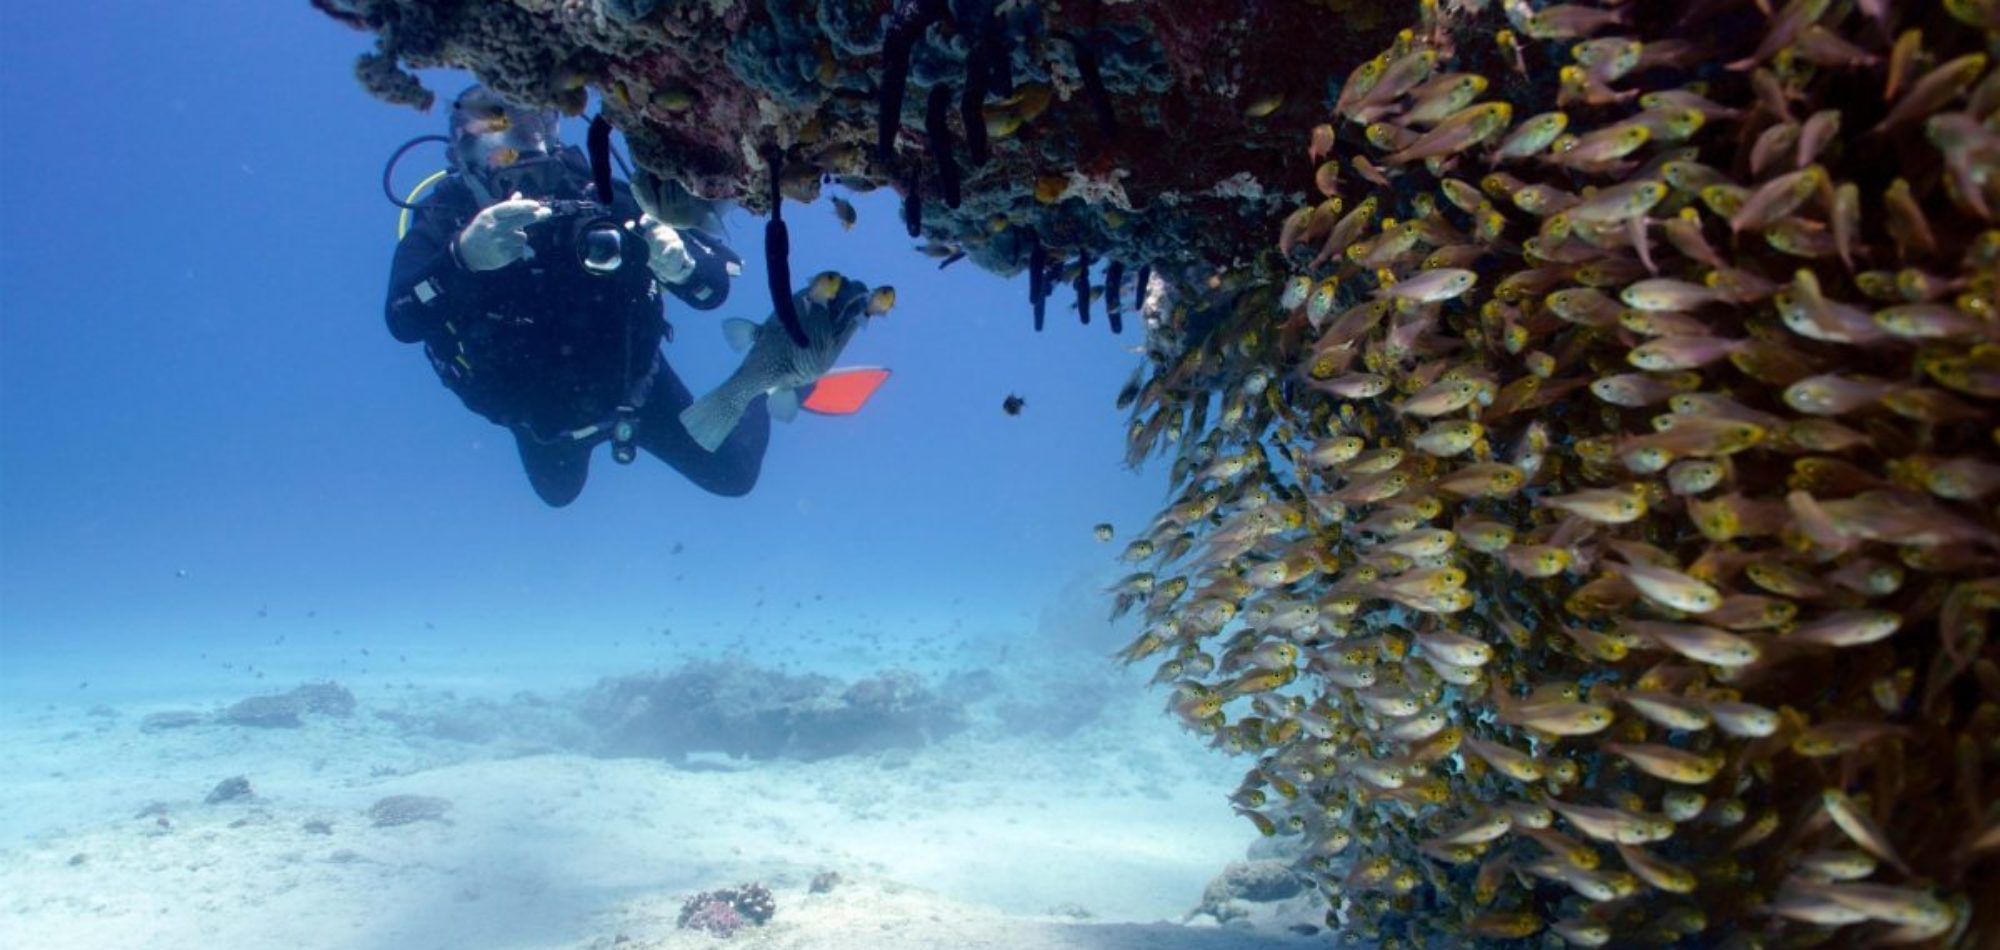 Diver - Ningaloo Reef